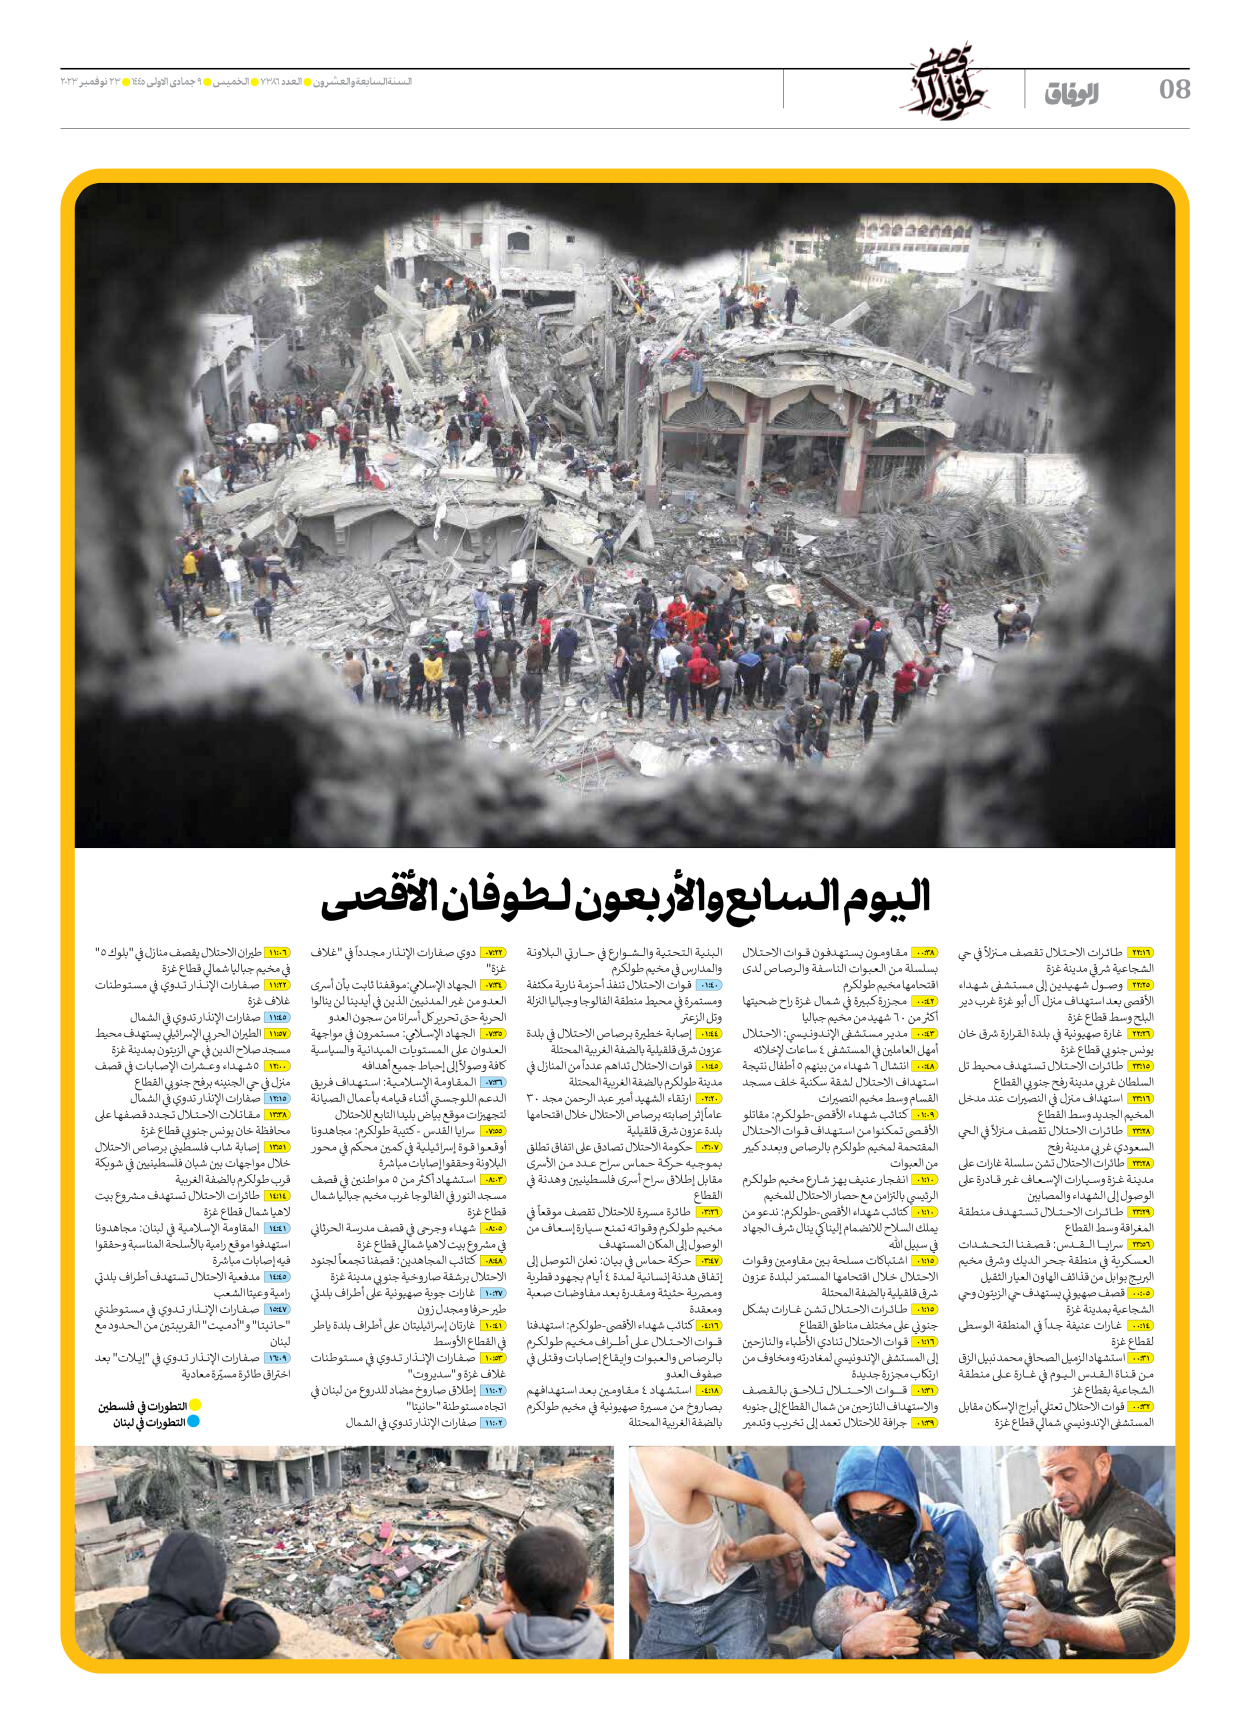 صحیفة ایران الدولیة الوفاق - العدد سبعة آلاف وثلاثمائة وستة وثمانون - ٢٣ نوفمبر ٢٠٢٣ - الصفحة ۸